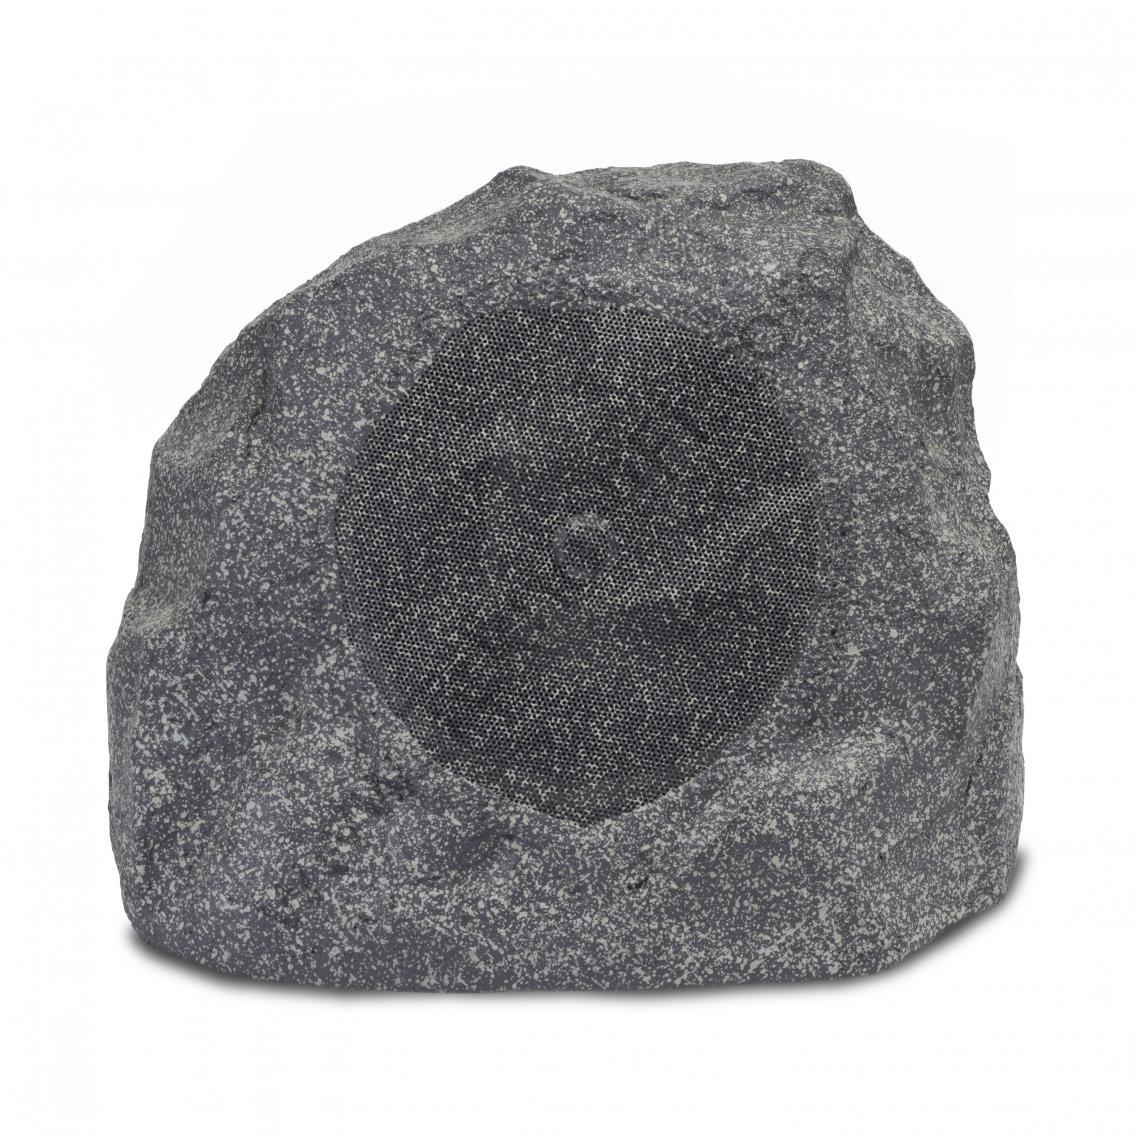 PRO-650-T-RK Kaya Hoparlör 'Granite' Adet